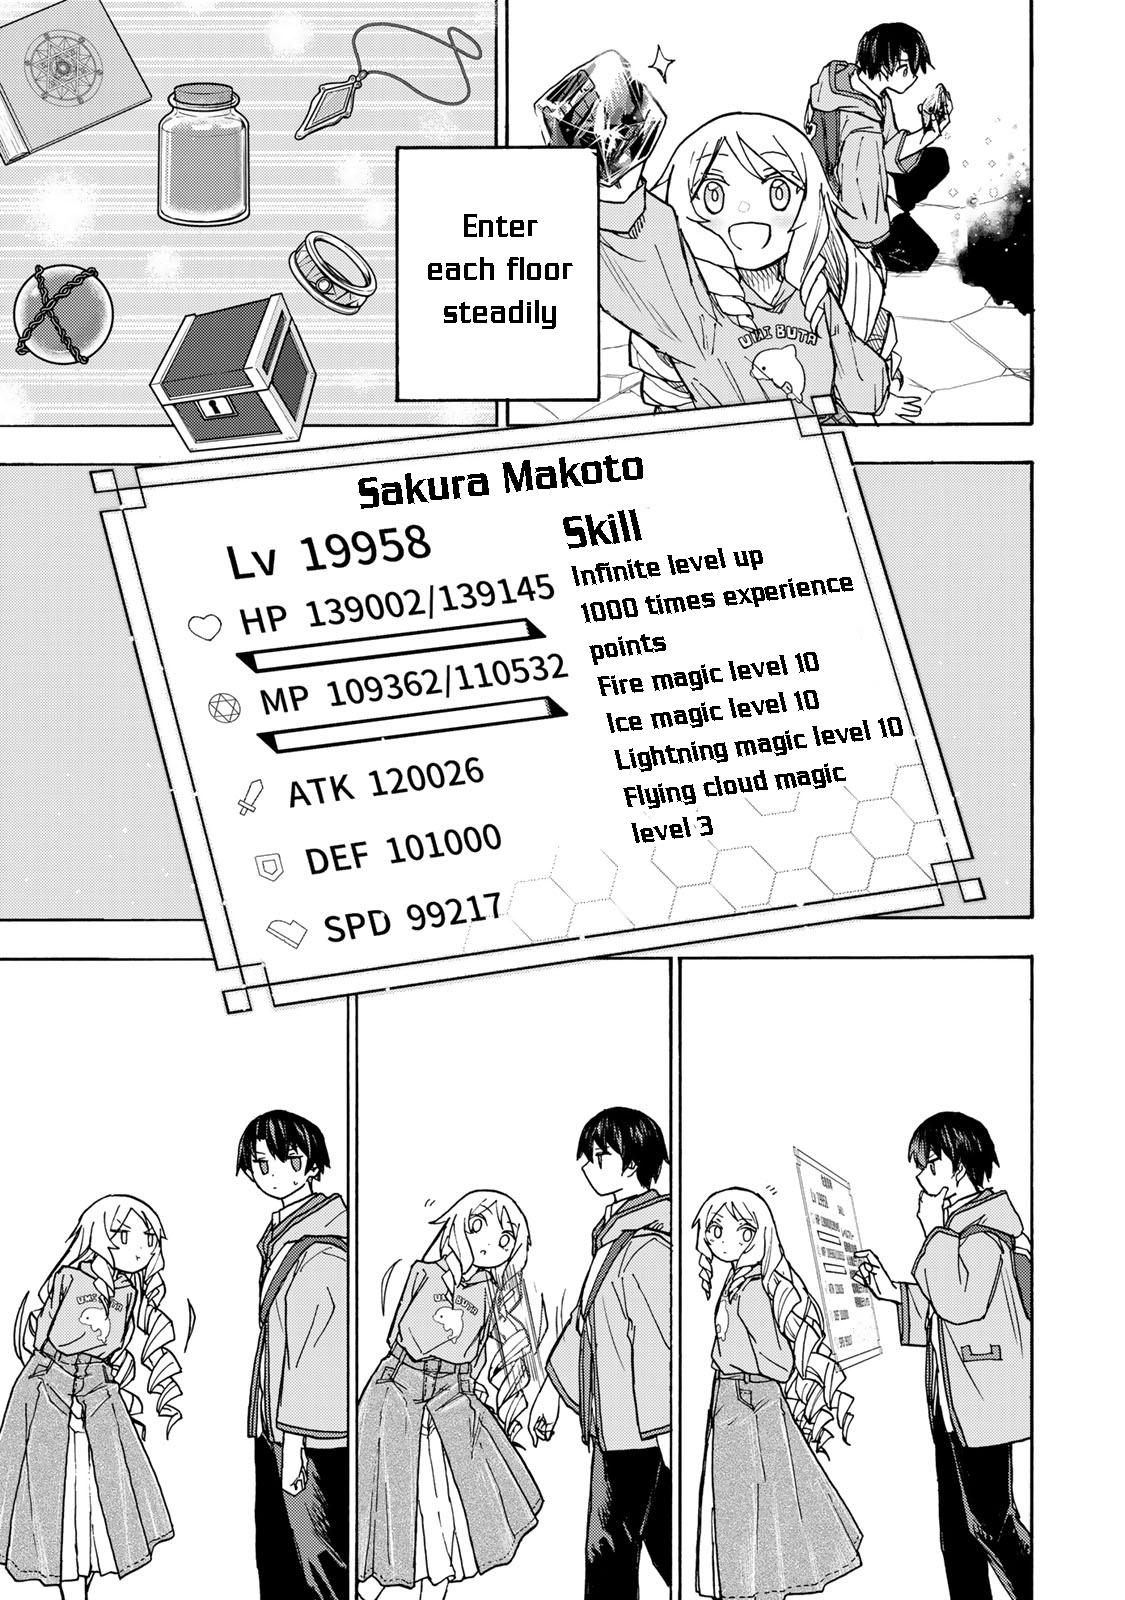 Saikyou de Saisoku no Mugen Level Up Ch.6 Page 17 - Mangago